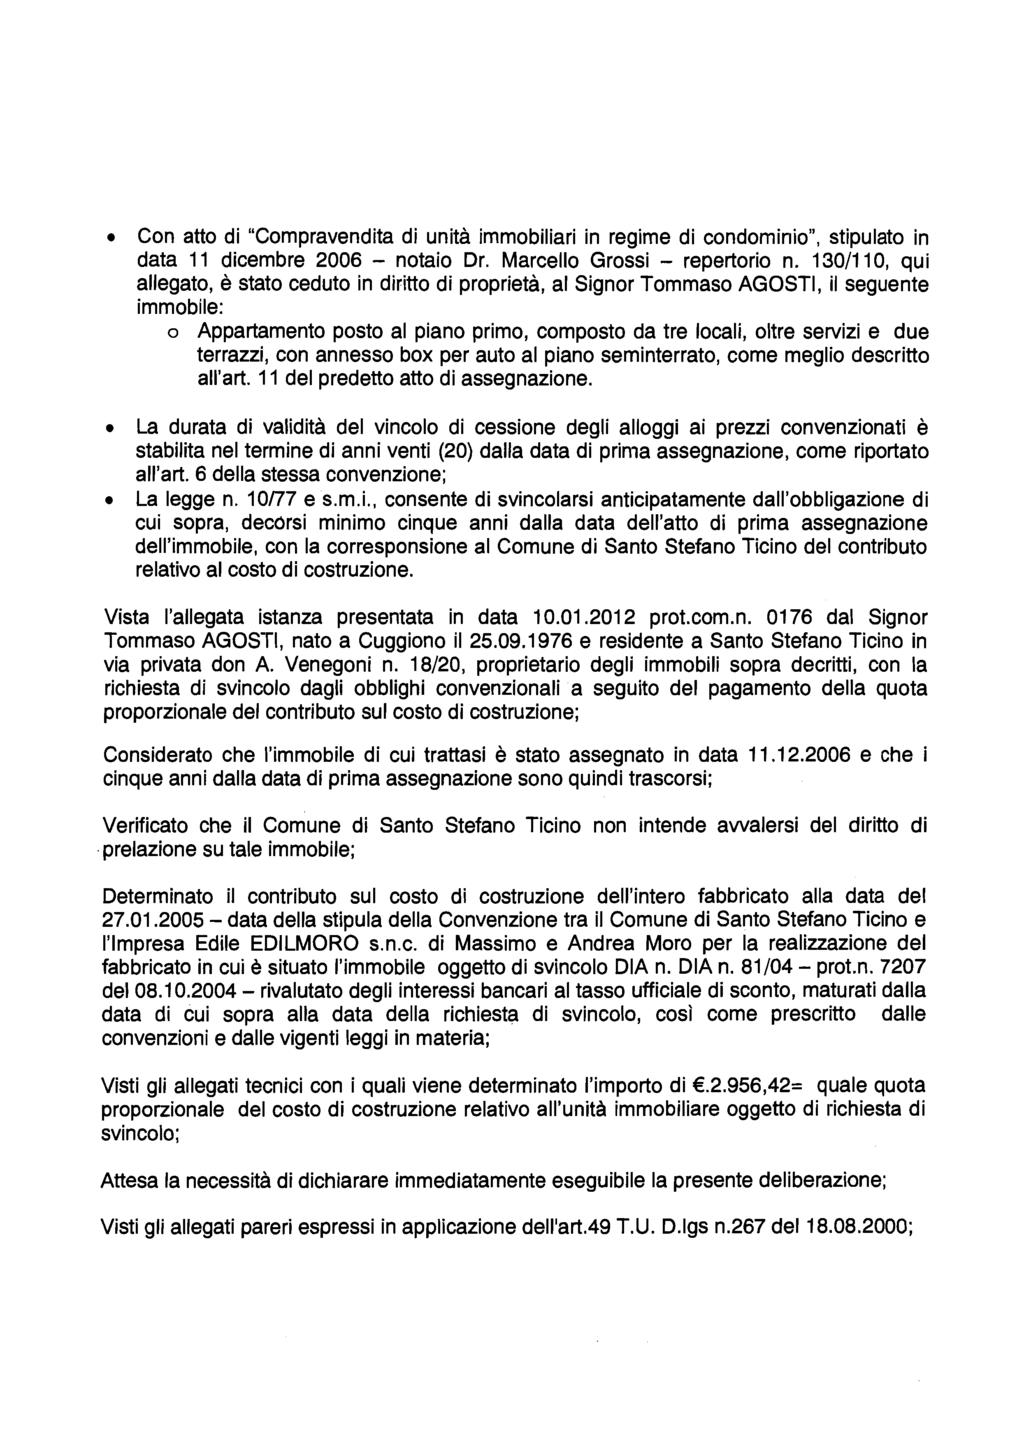 Con atto di "Compravendita di unità immobiliari in regime di condominio", stipulato in data 11 dicembre 2006 - notaio Dr. Marcello Grossi - repertorio n.